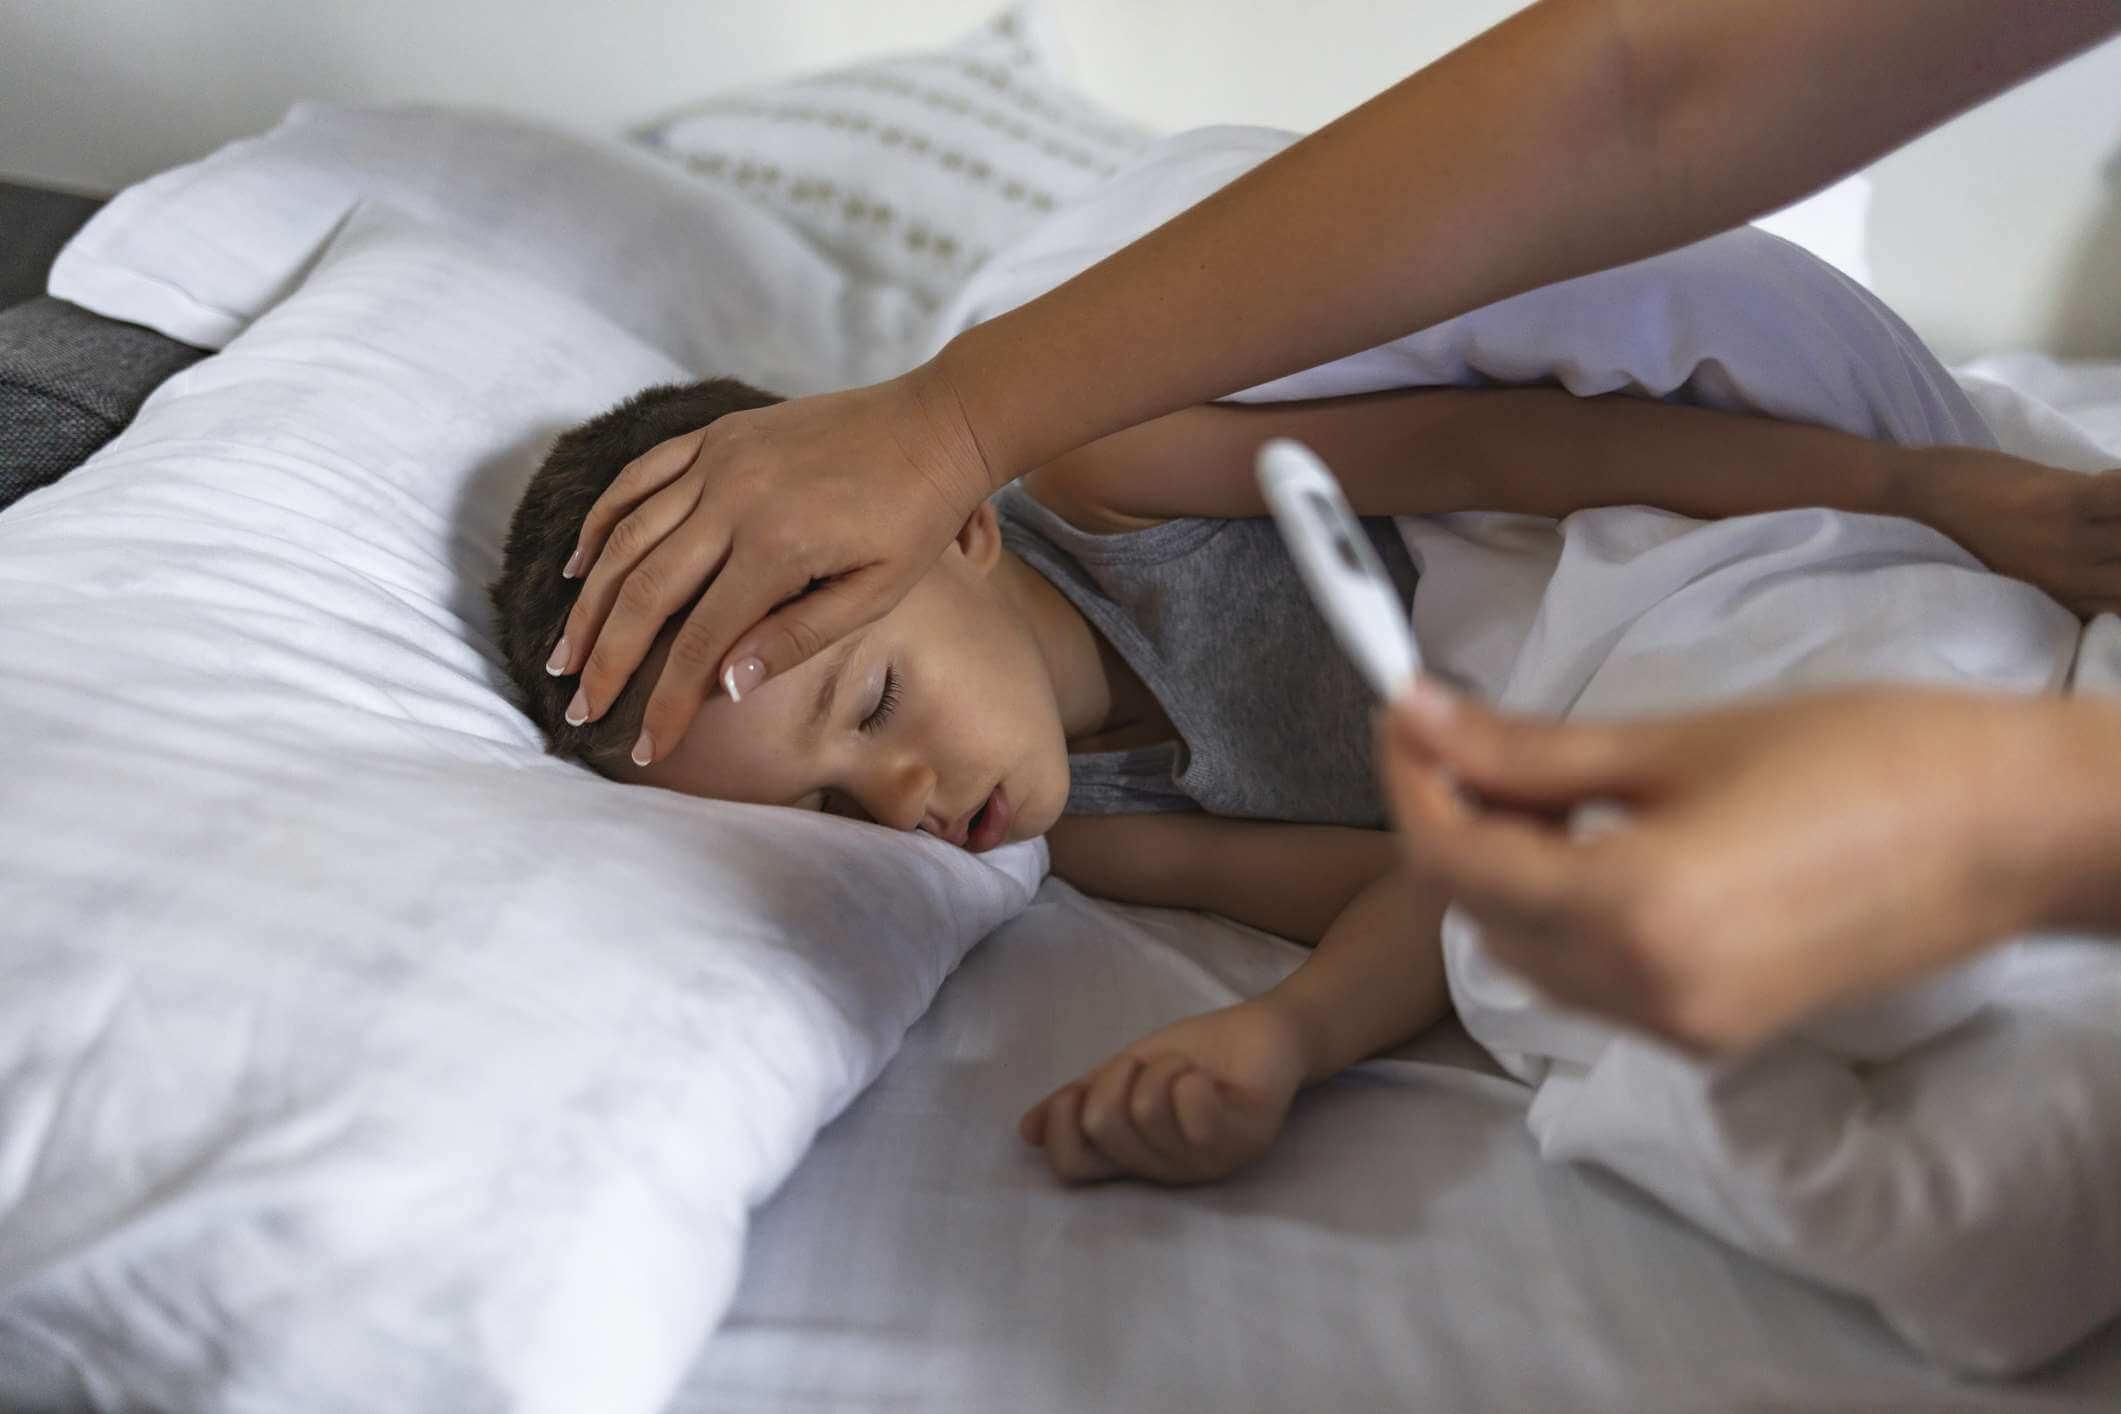 Foto eines kranken männlichen Kindes mit hohem Fieber, das im Bett liegt, während die Mutter die Temperatur misst.